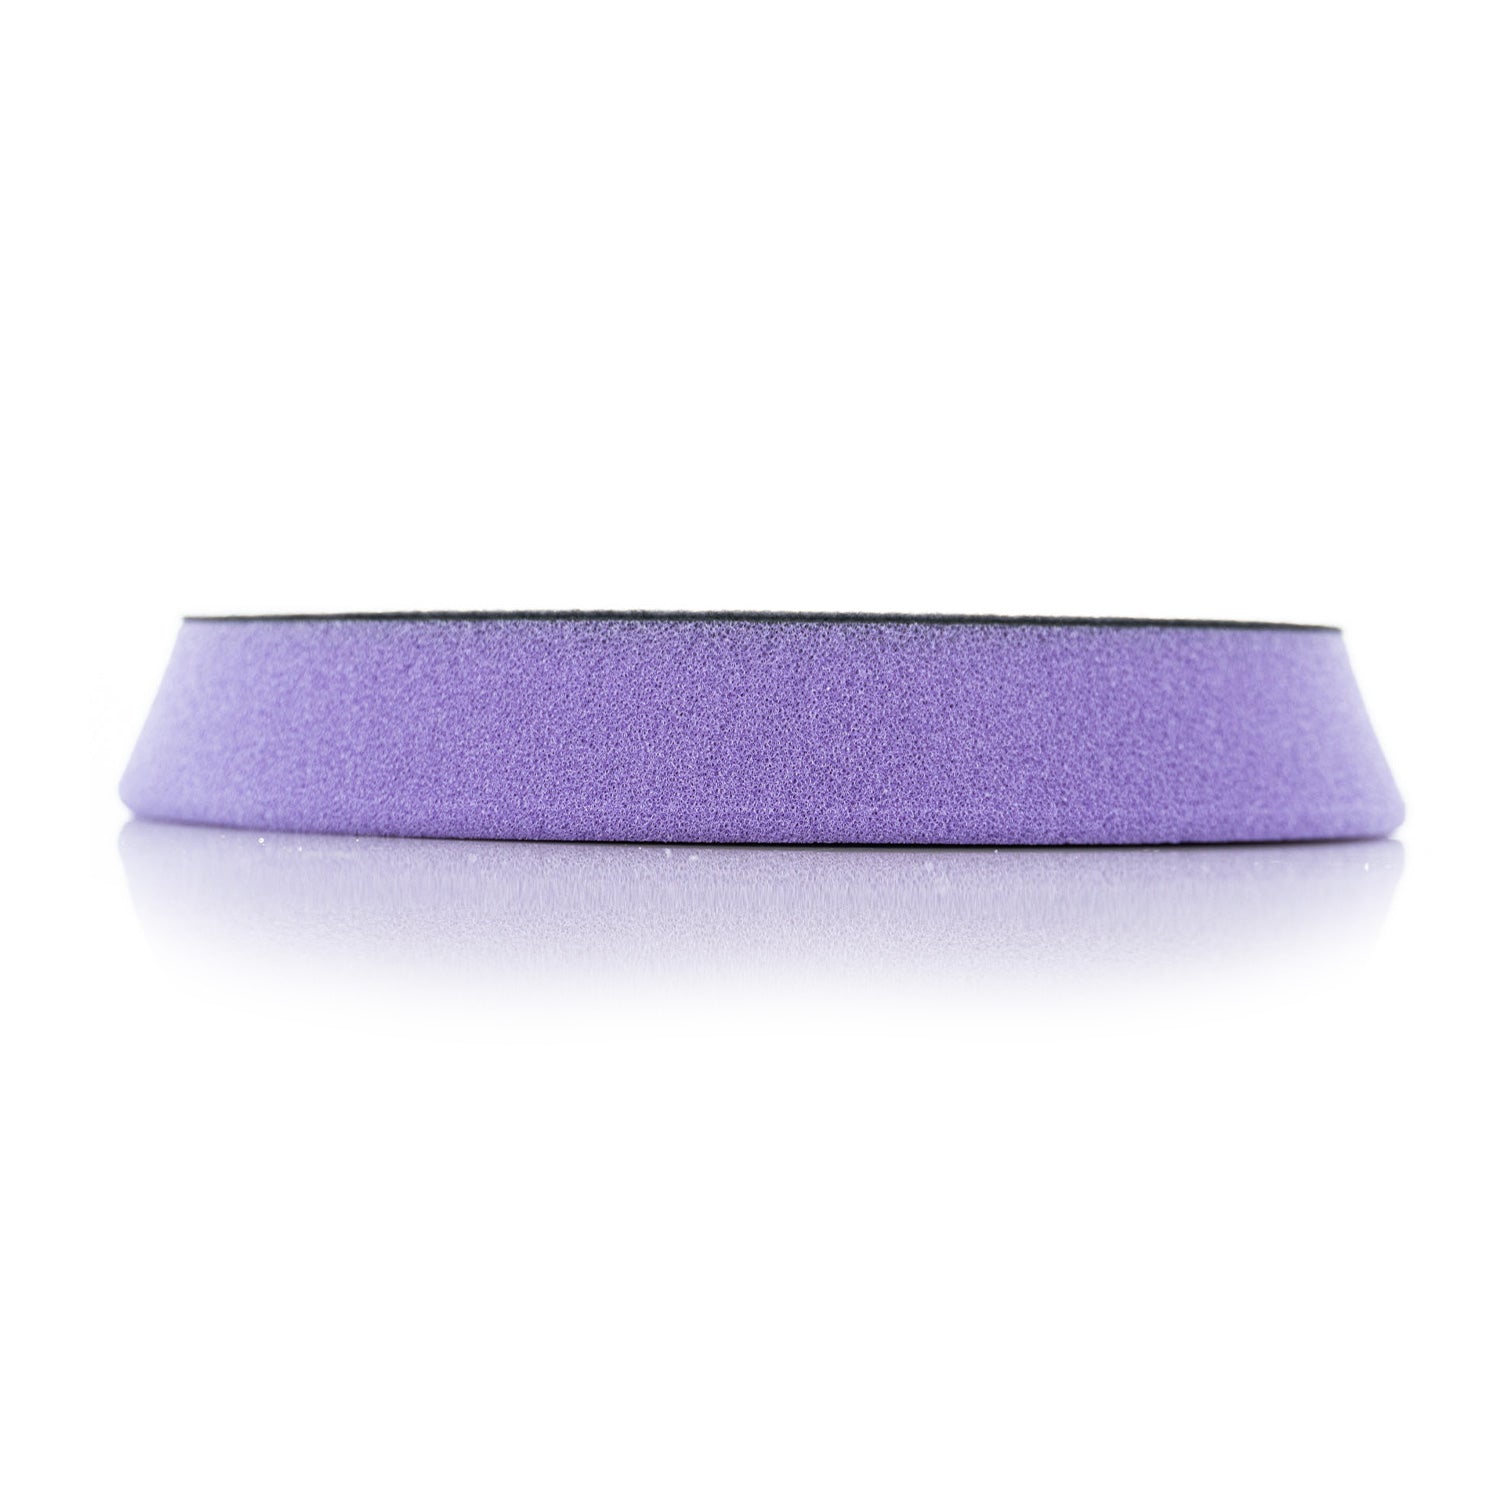 light-purple-spider-pad-thickness